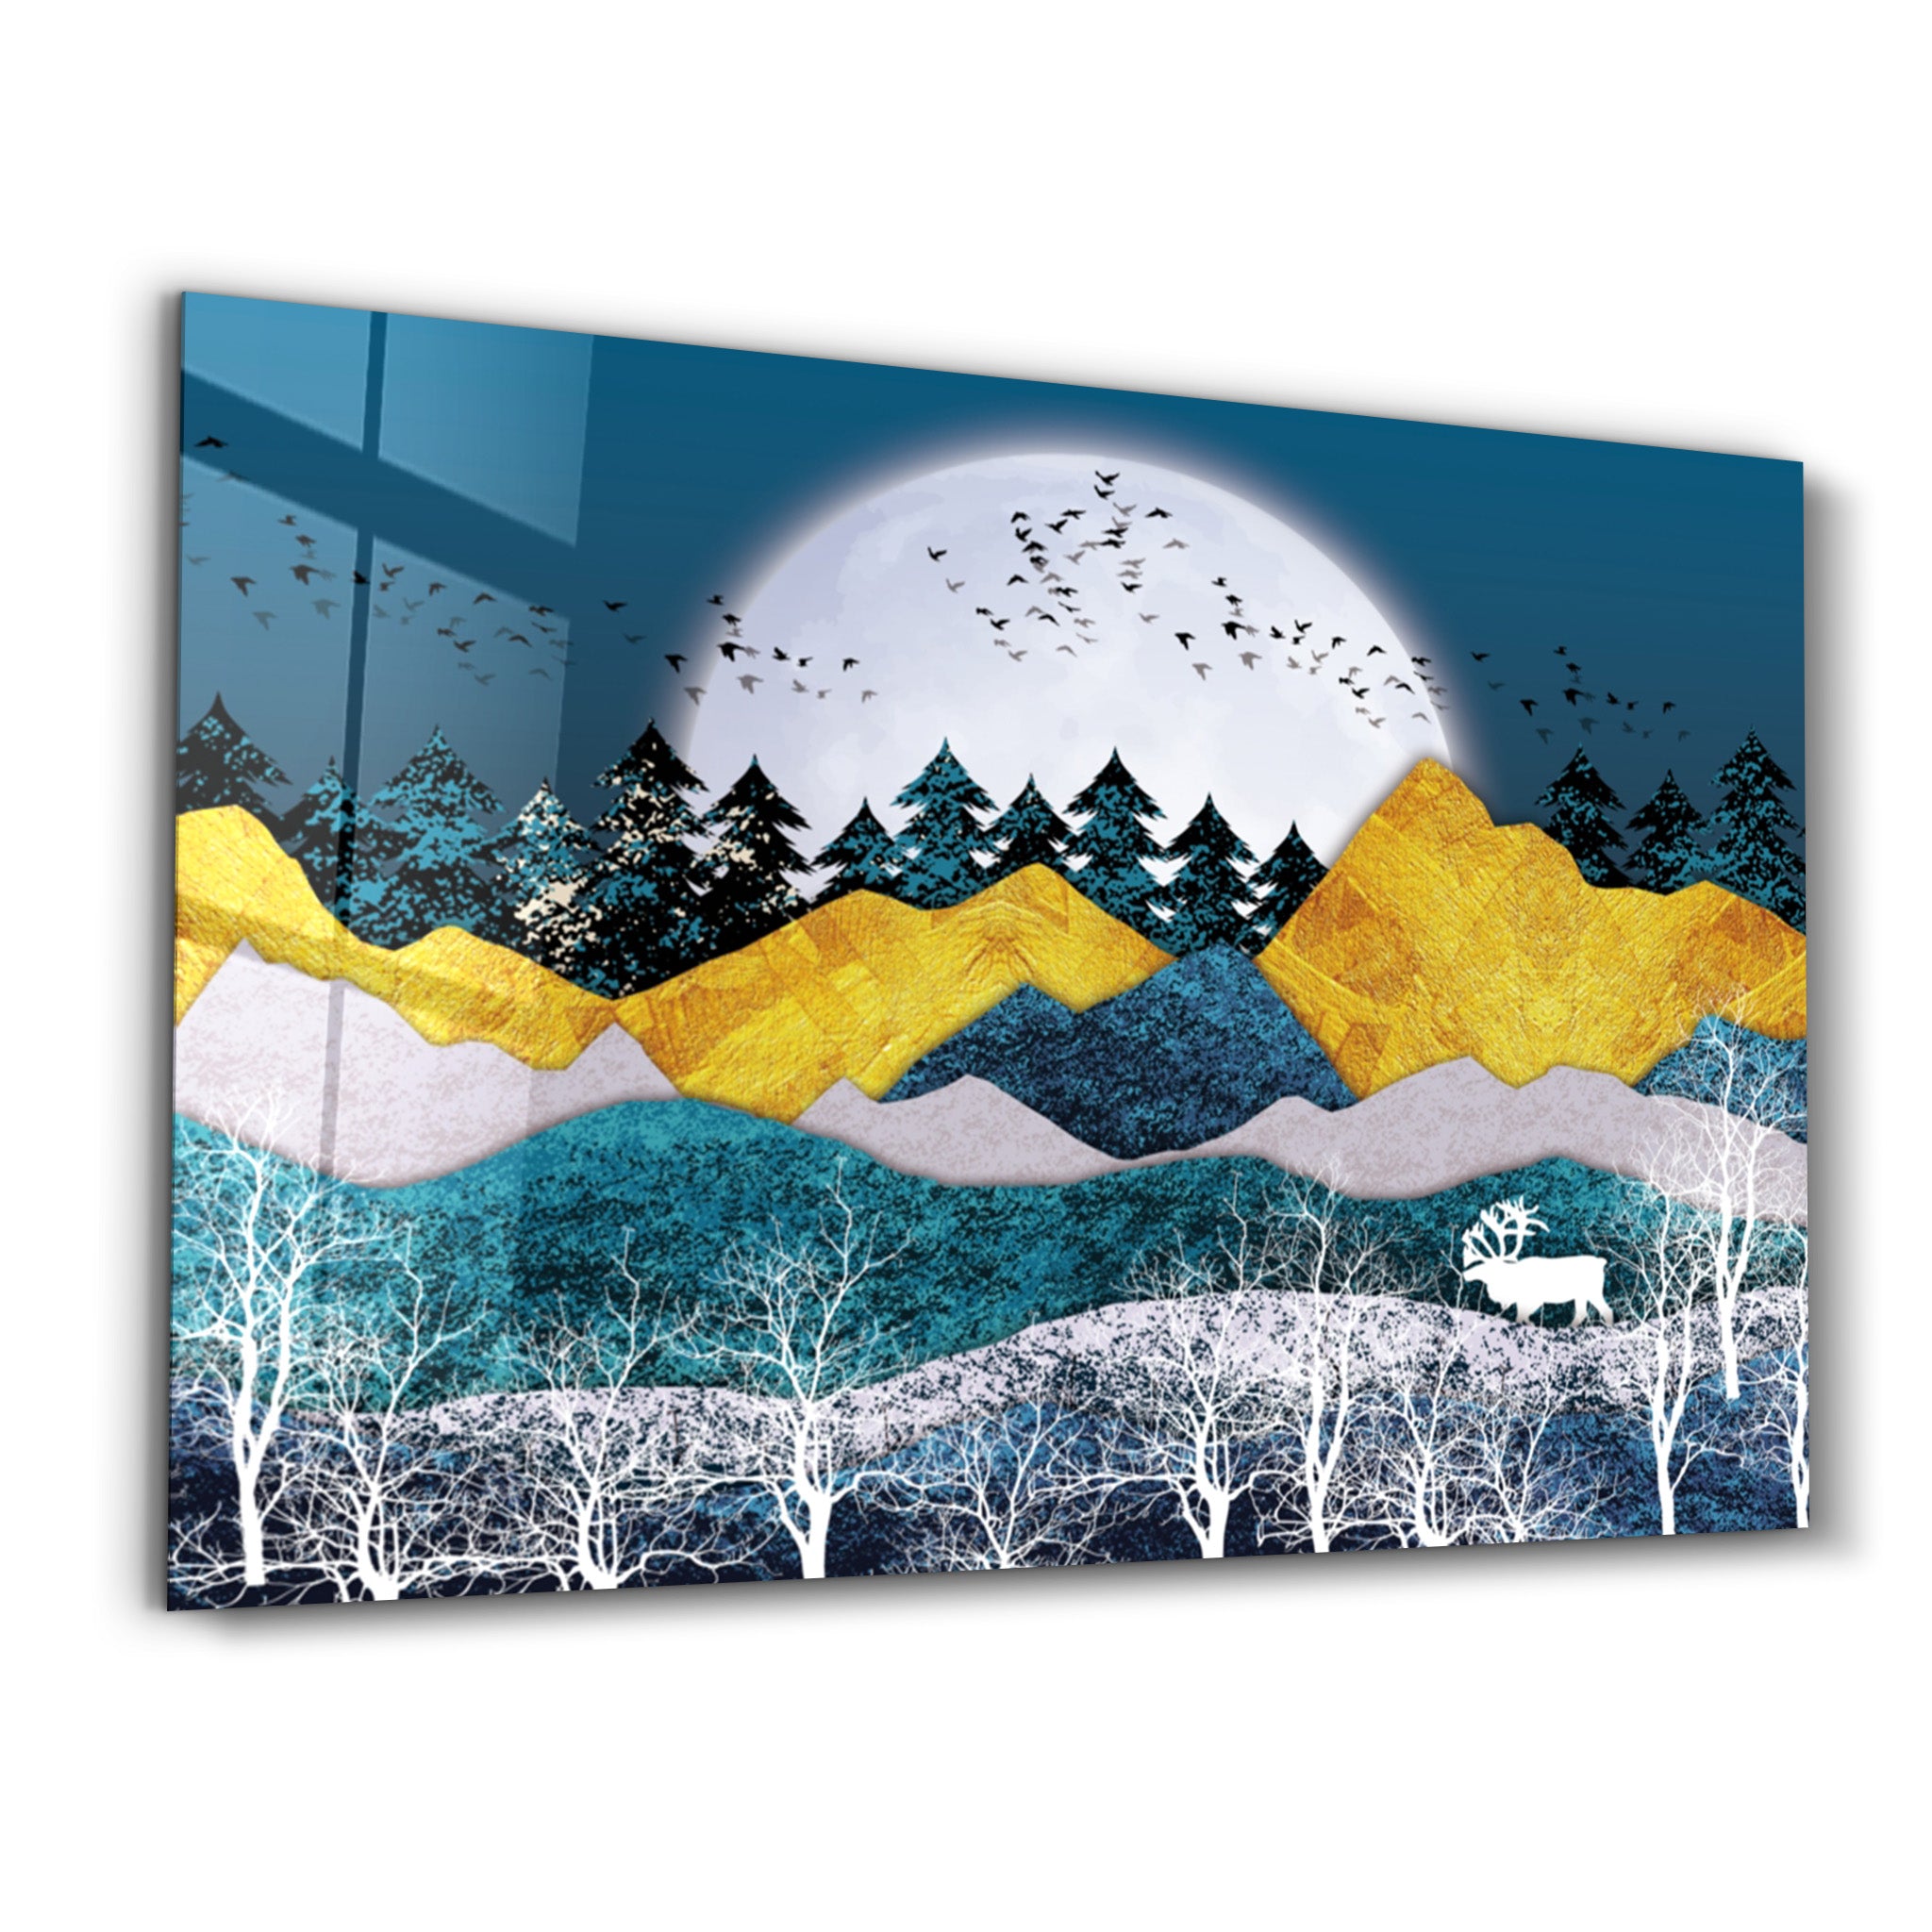 ・"Cute Forest2"・Glass Wall Art - ArtDesigna Glass Printing Wall Art